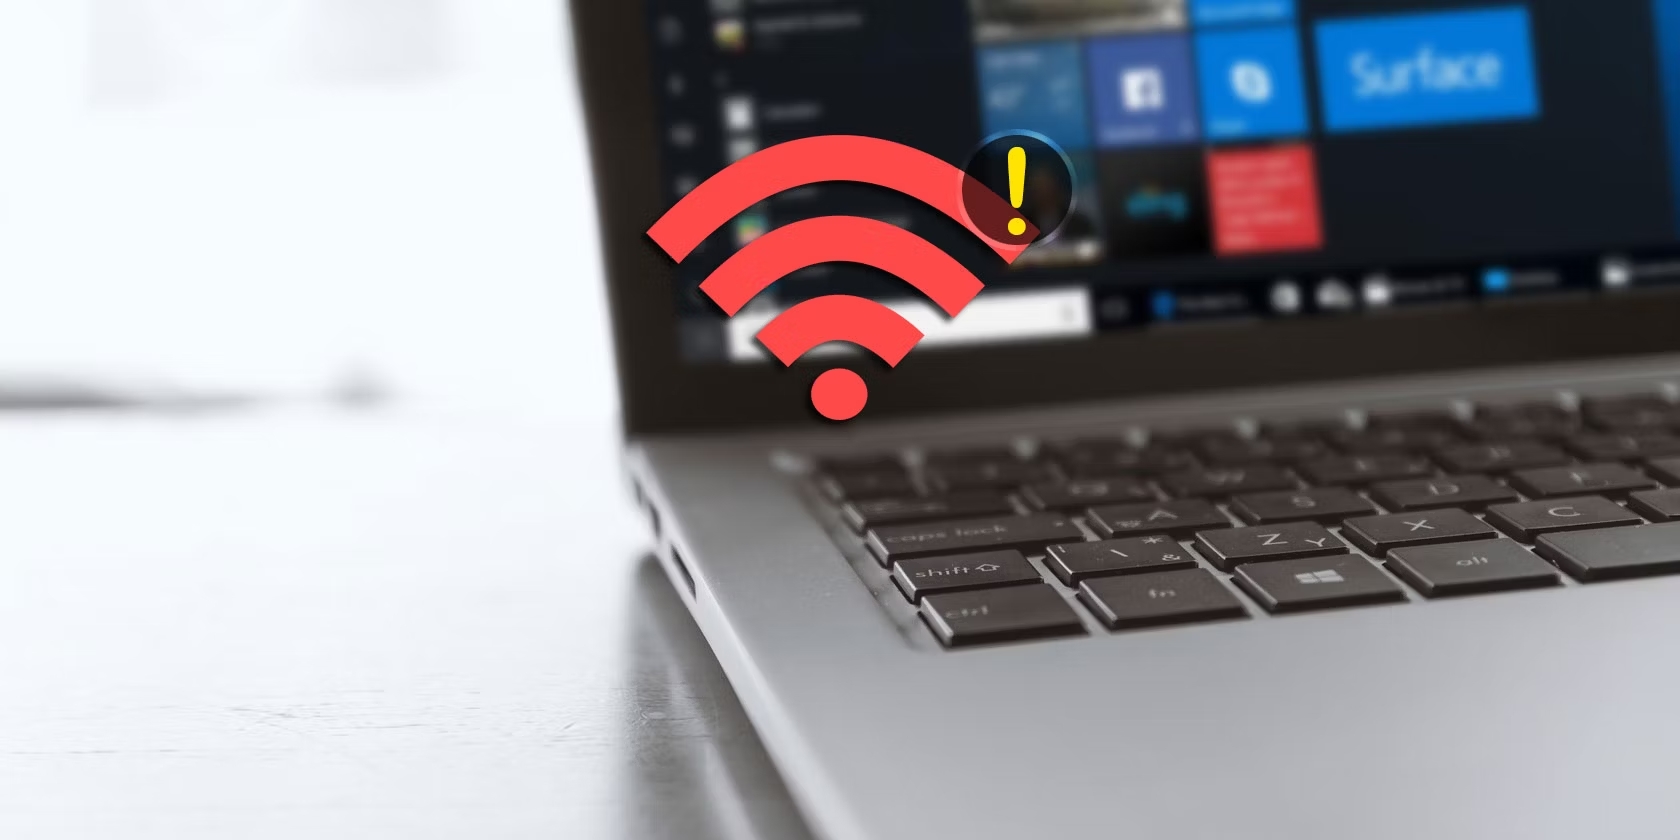 10 Cách khắc phục lỗi laptop bị mất Wifi nhanh chóng, đơn giản